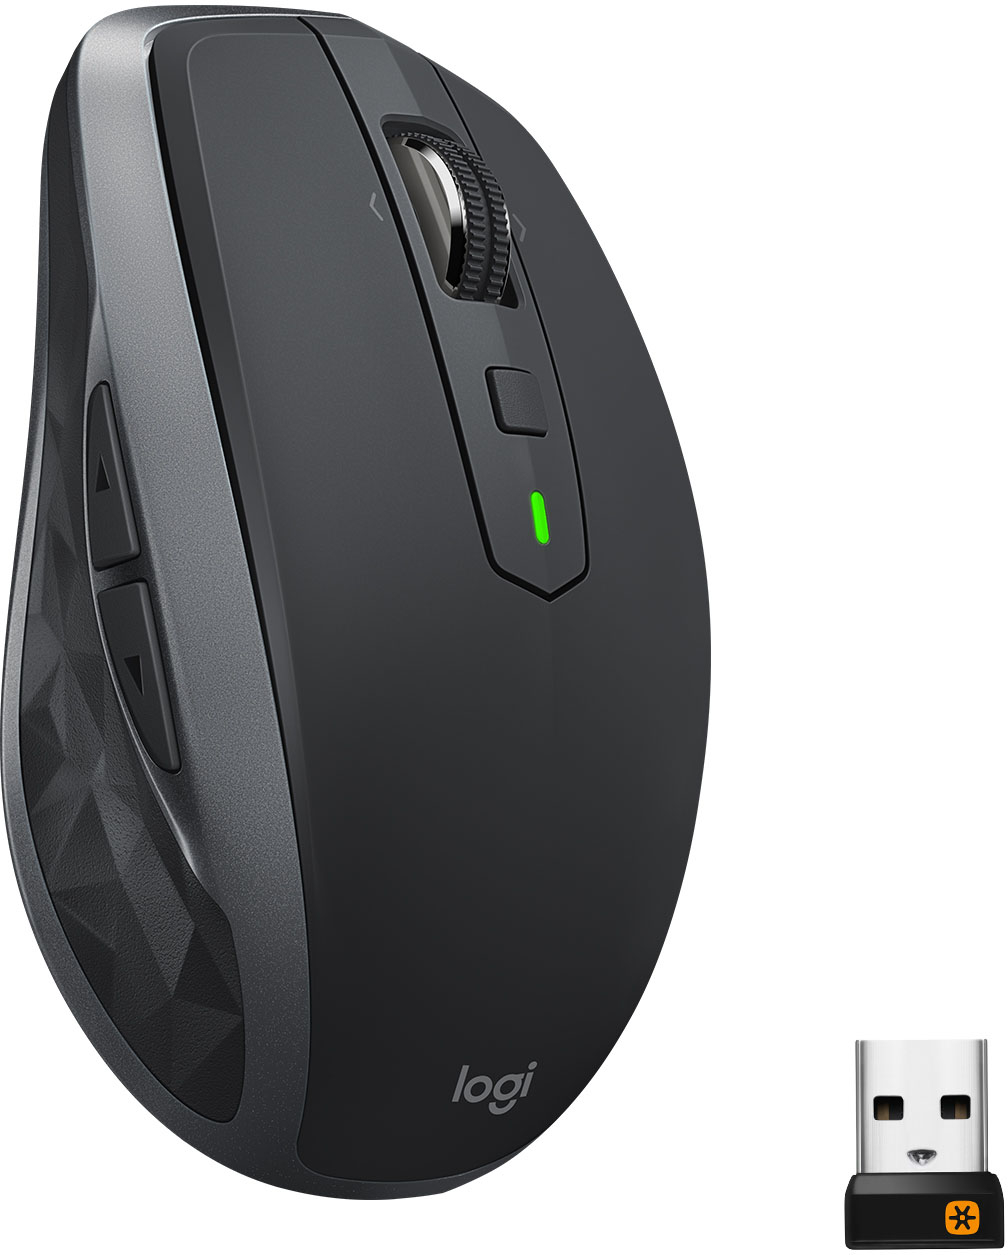 Logitech M705 Marathon Mouse - Black - Micro Center